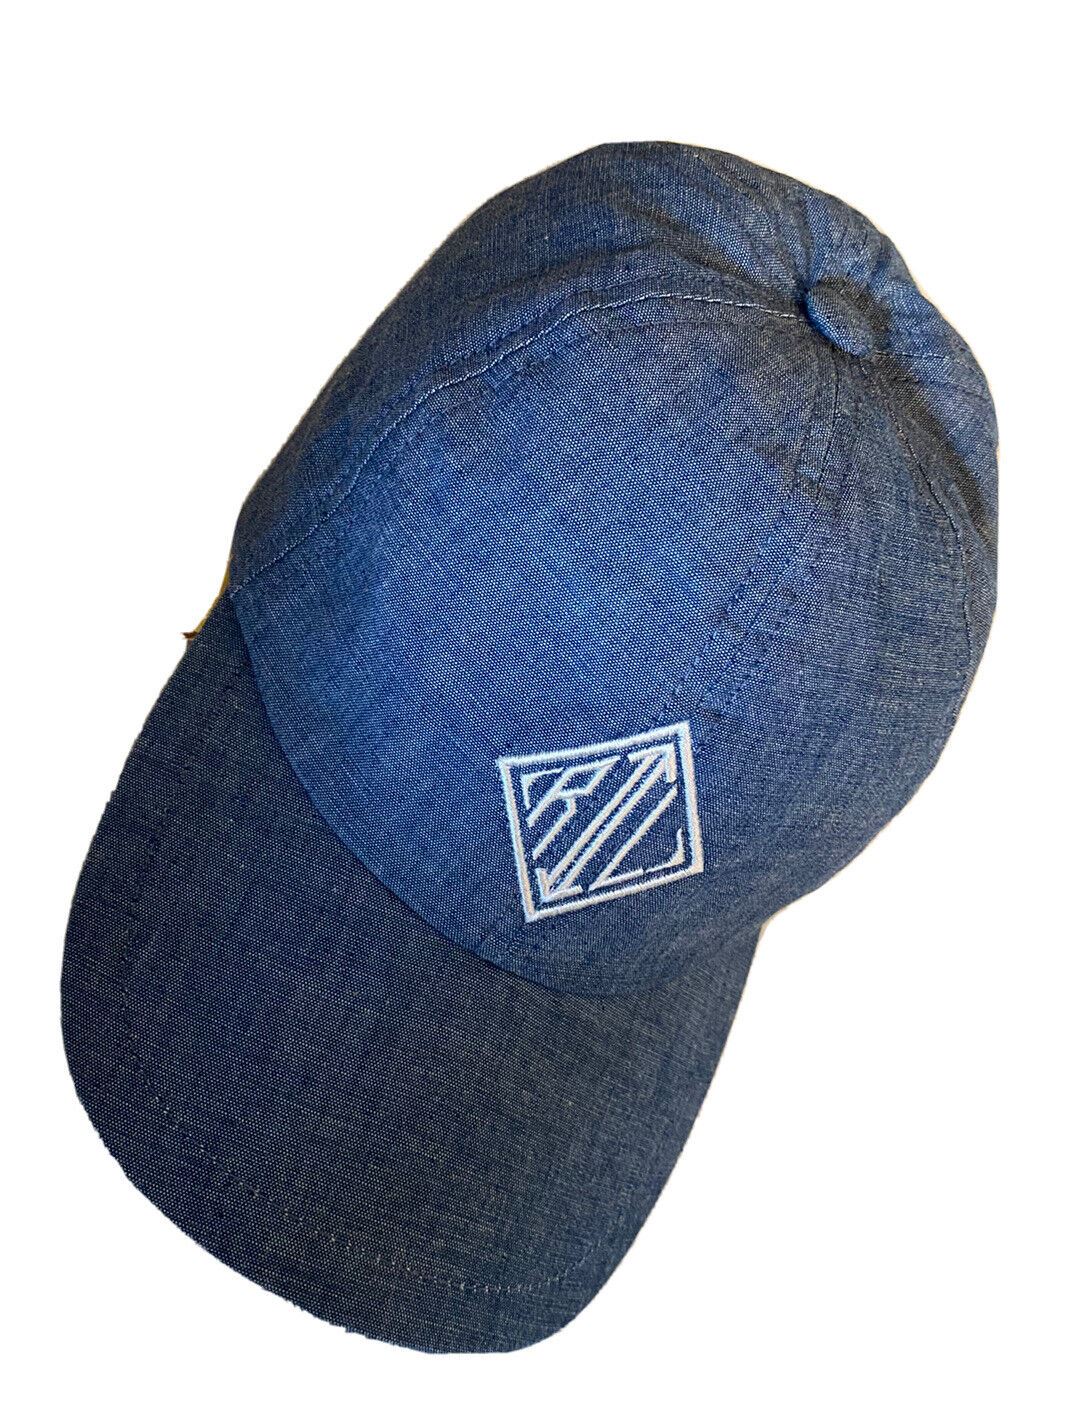 NWT Ralph Lauren Бейсбольная кепка с фиолетовым логотипом, синяя шляпа, один размер, Италия